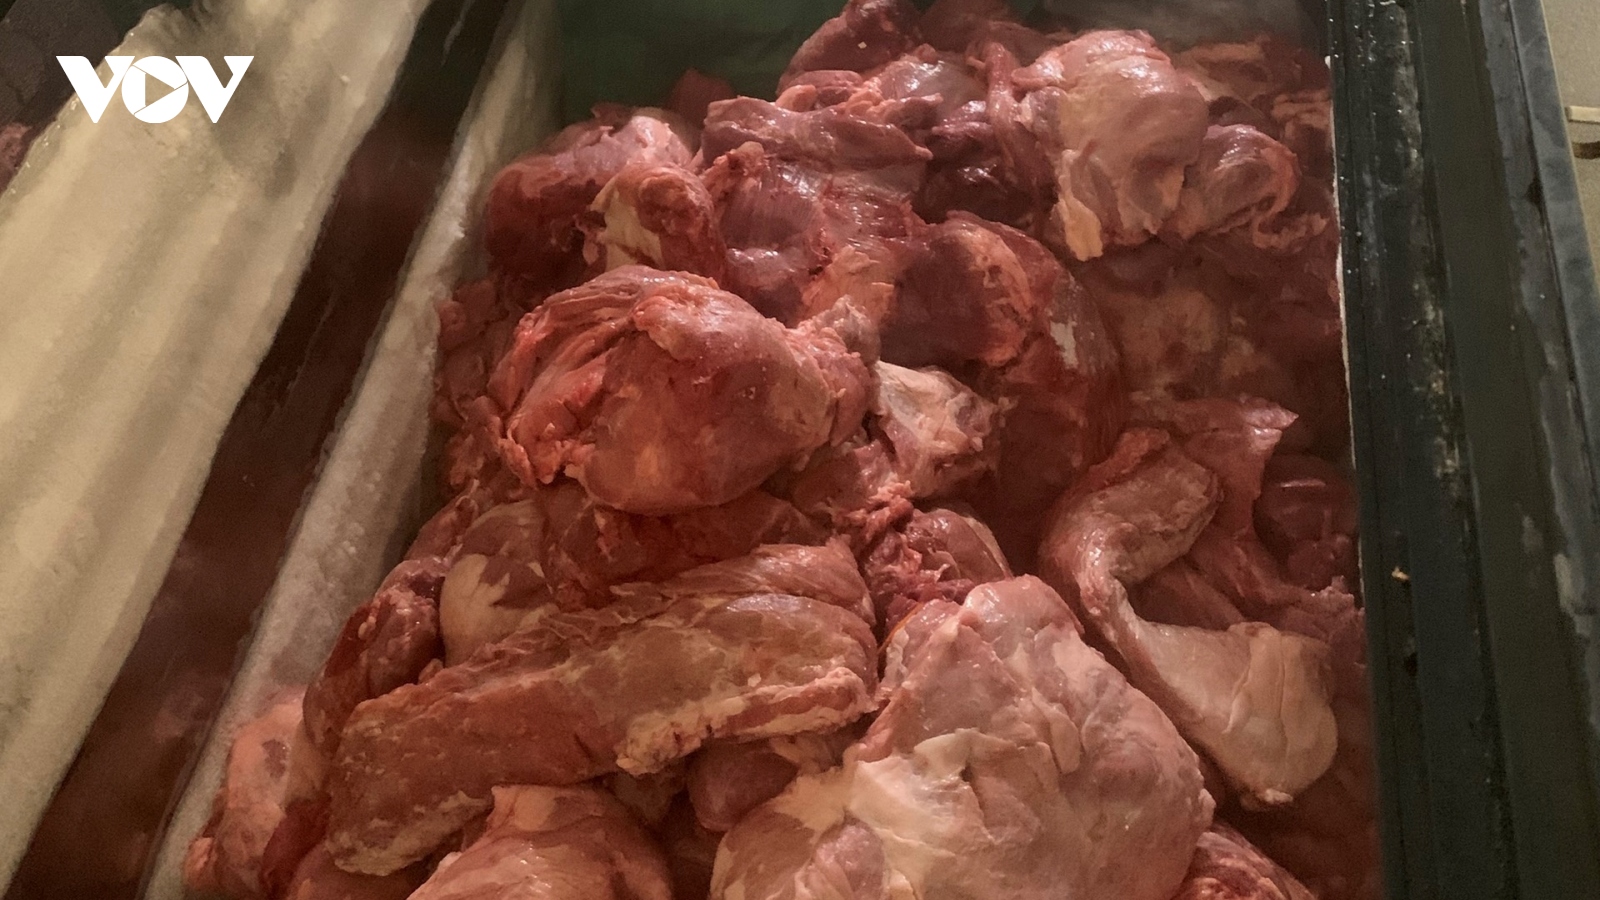 Chủ quán bánh mỳ thịt nướng nhập thịt lợn nhiễm dịch tả châu Phi